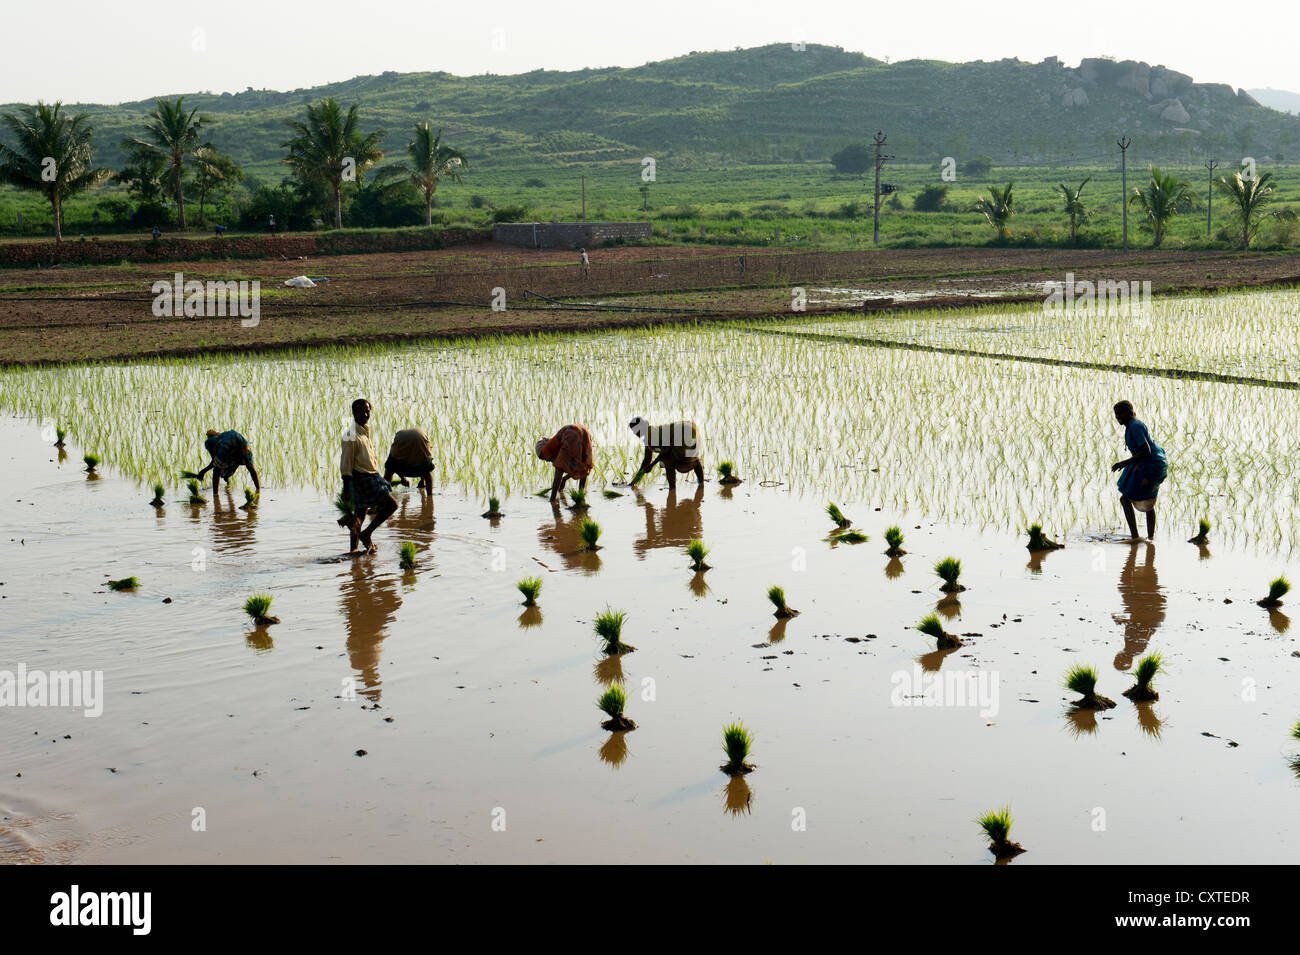 Les femmes indiennes plantent de jeunes plants de riz dans une rizière en Inde. Silhouette Banque D'Images